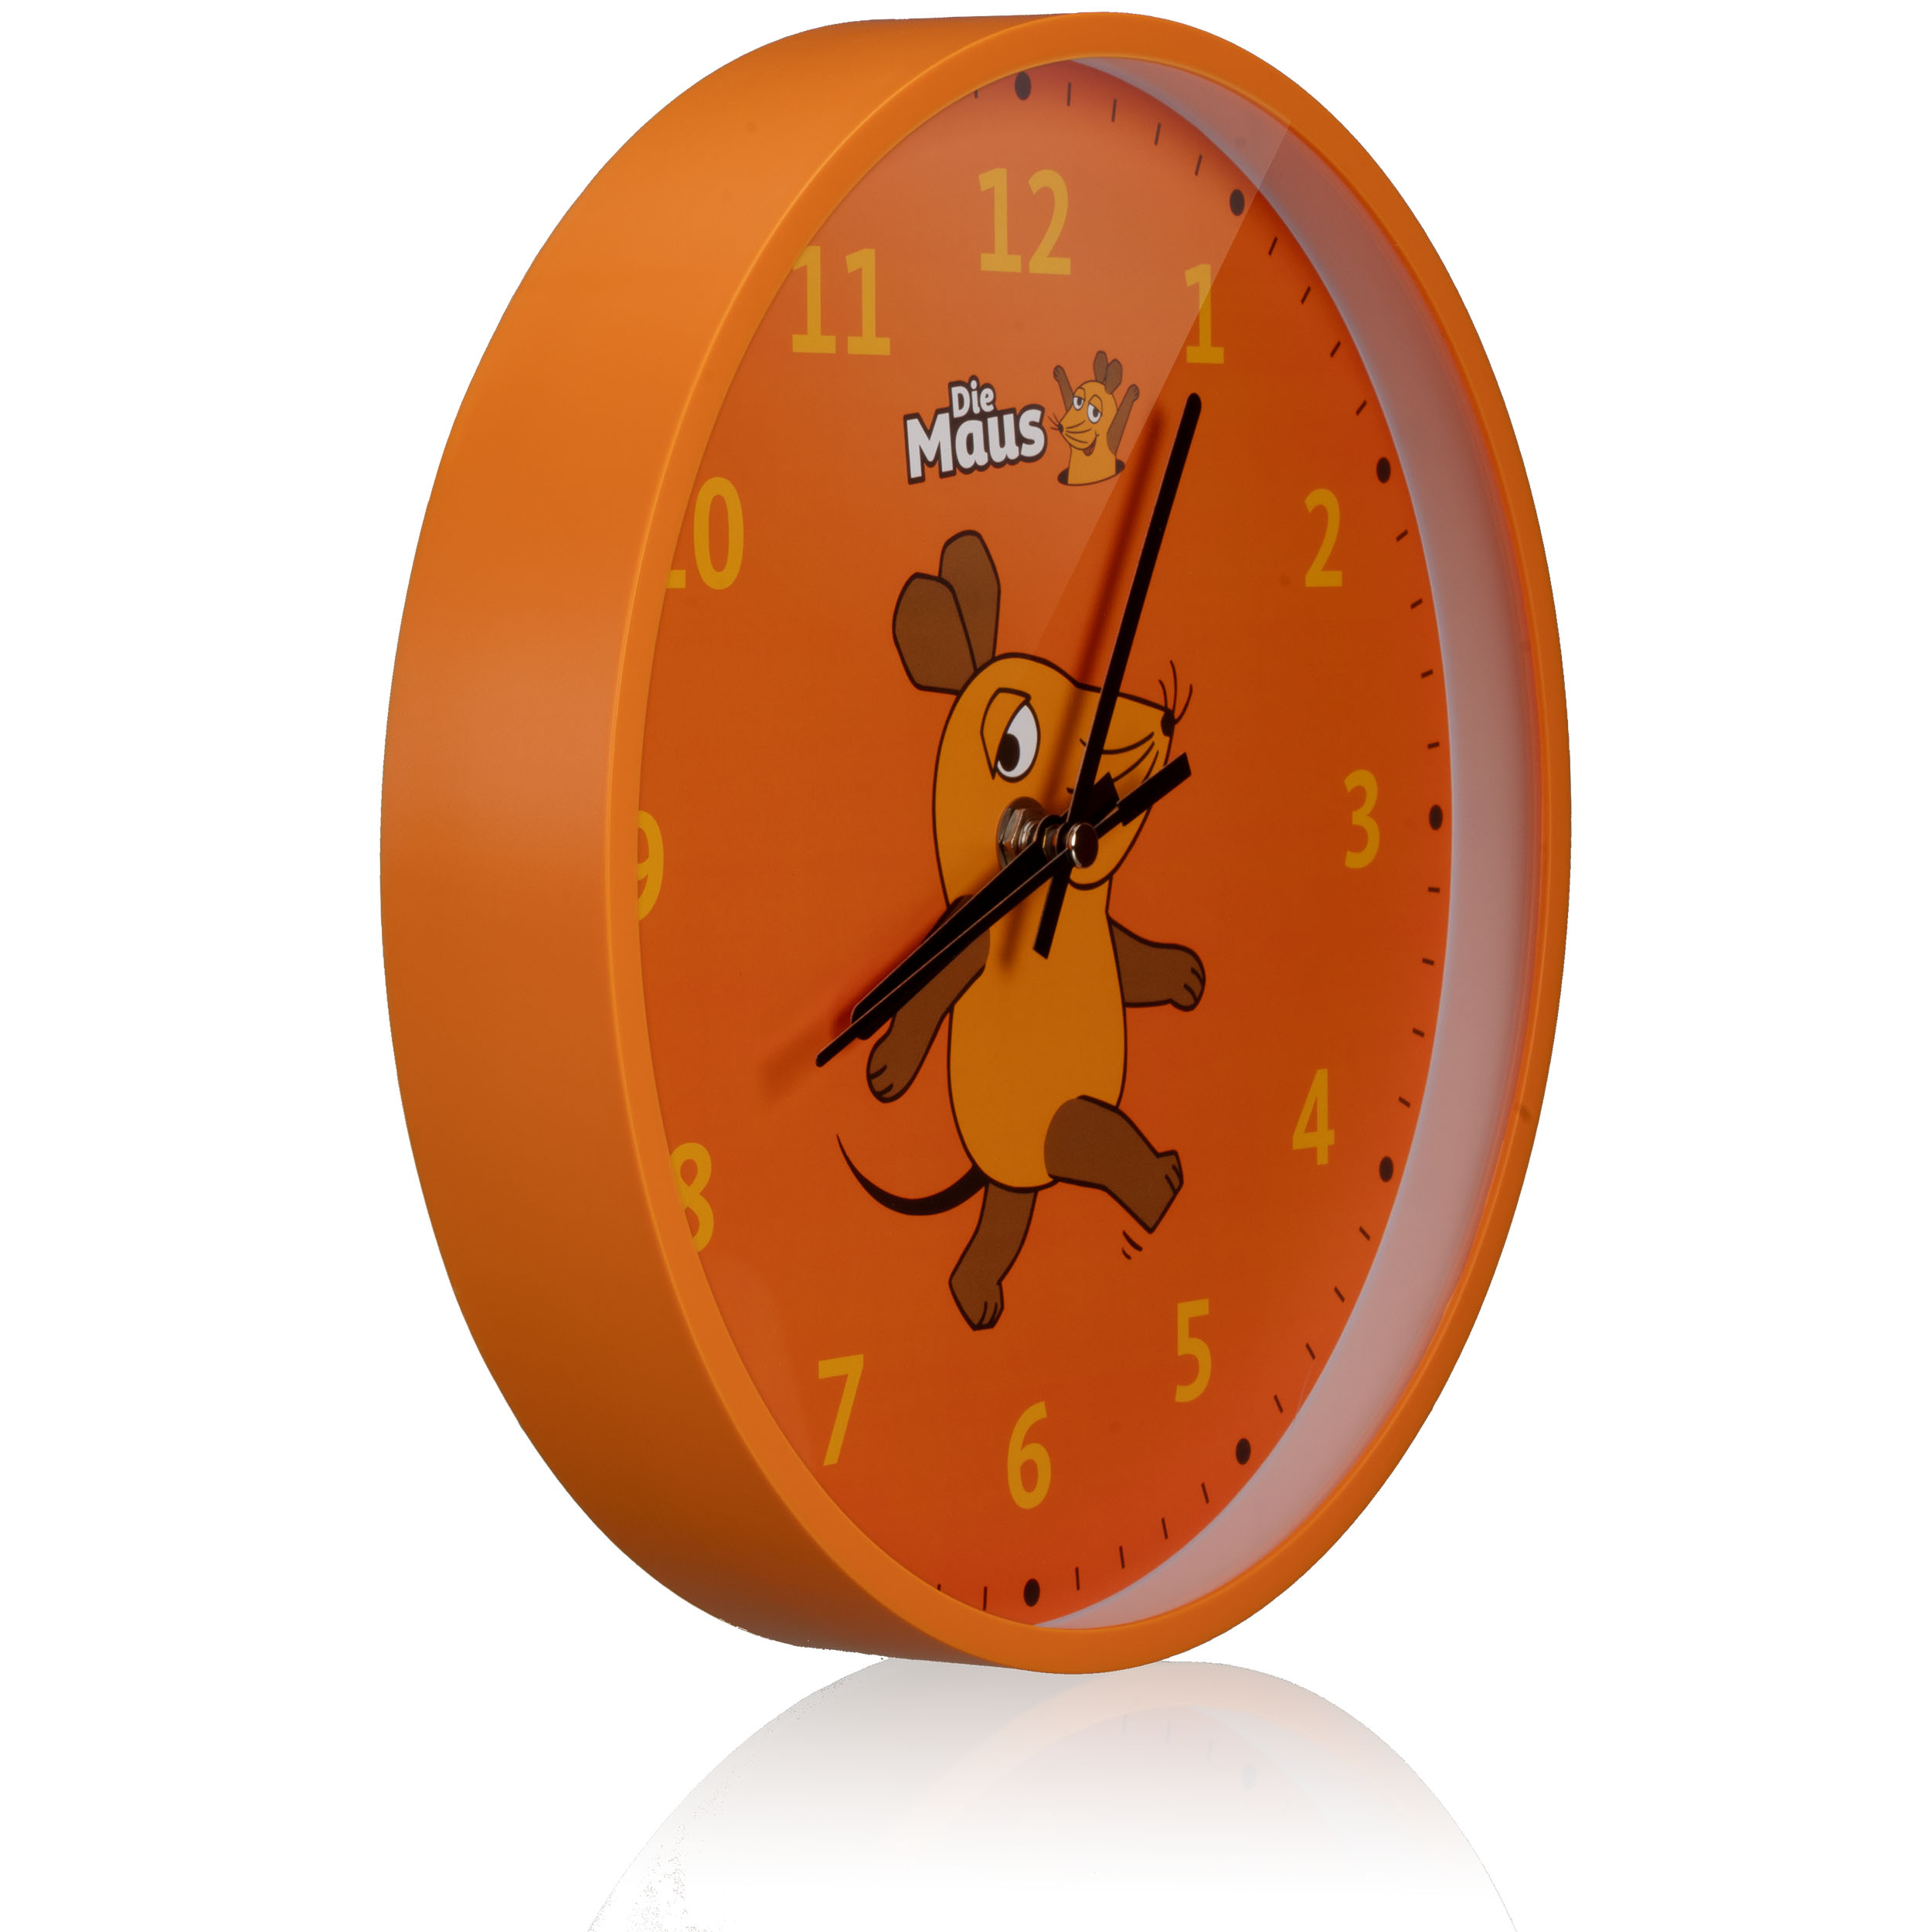 DieMaus Children's Wall Clock